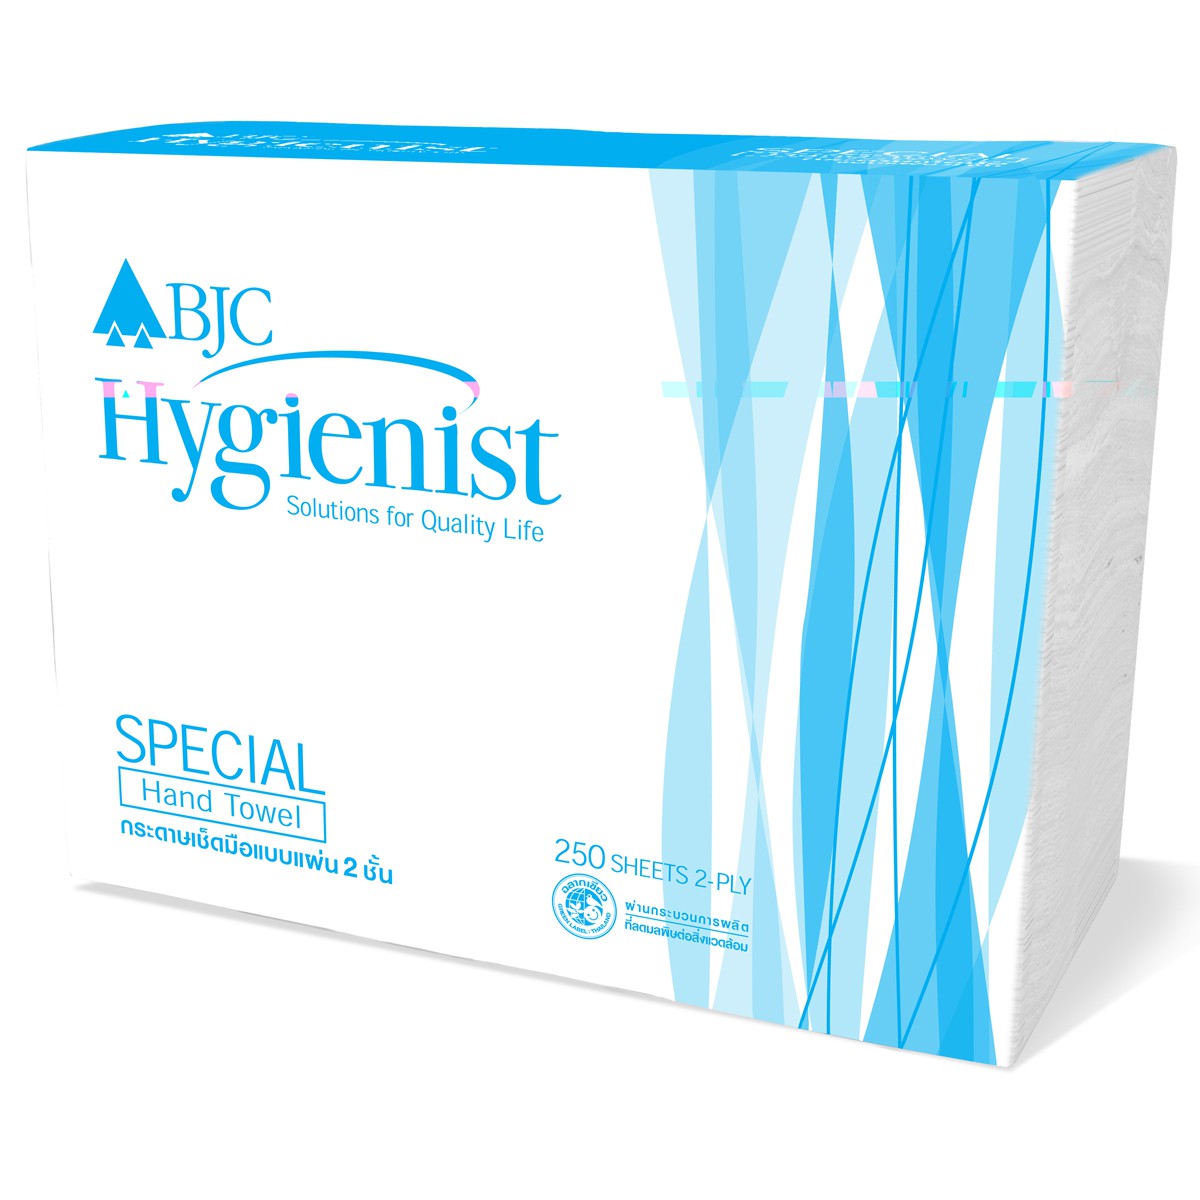 กระดาษเช็ดมือต่อเนื่องแบบแผ่น 2ชั้น BJC Hygienist Special 250 แผ่น/ห่อ BH044125